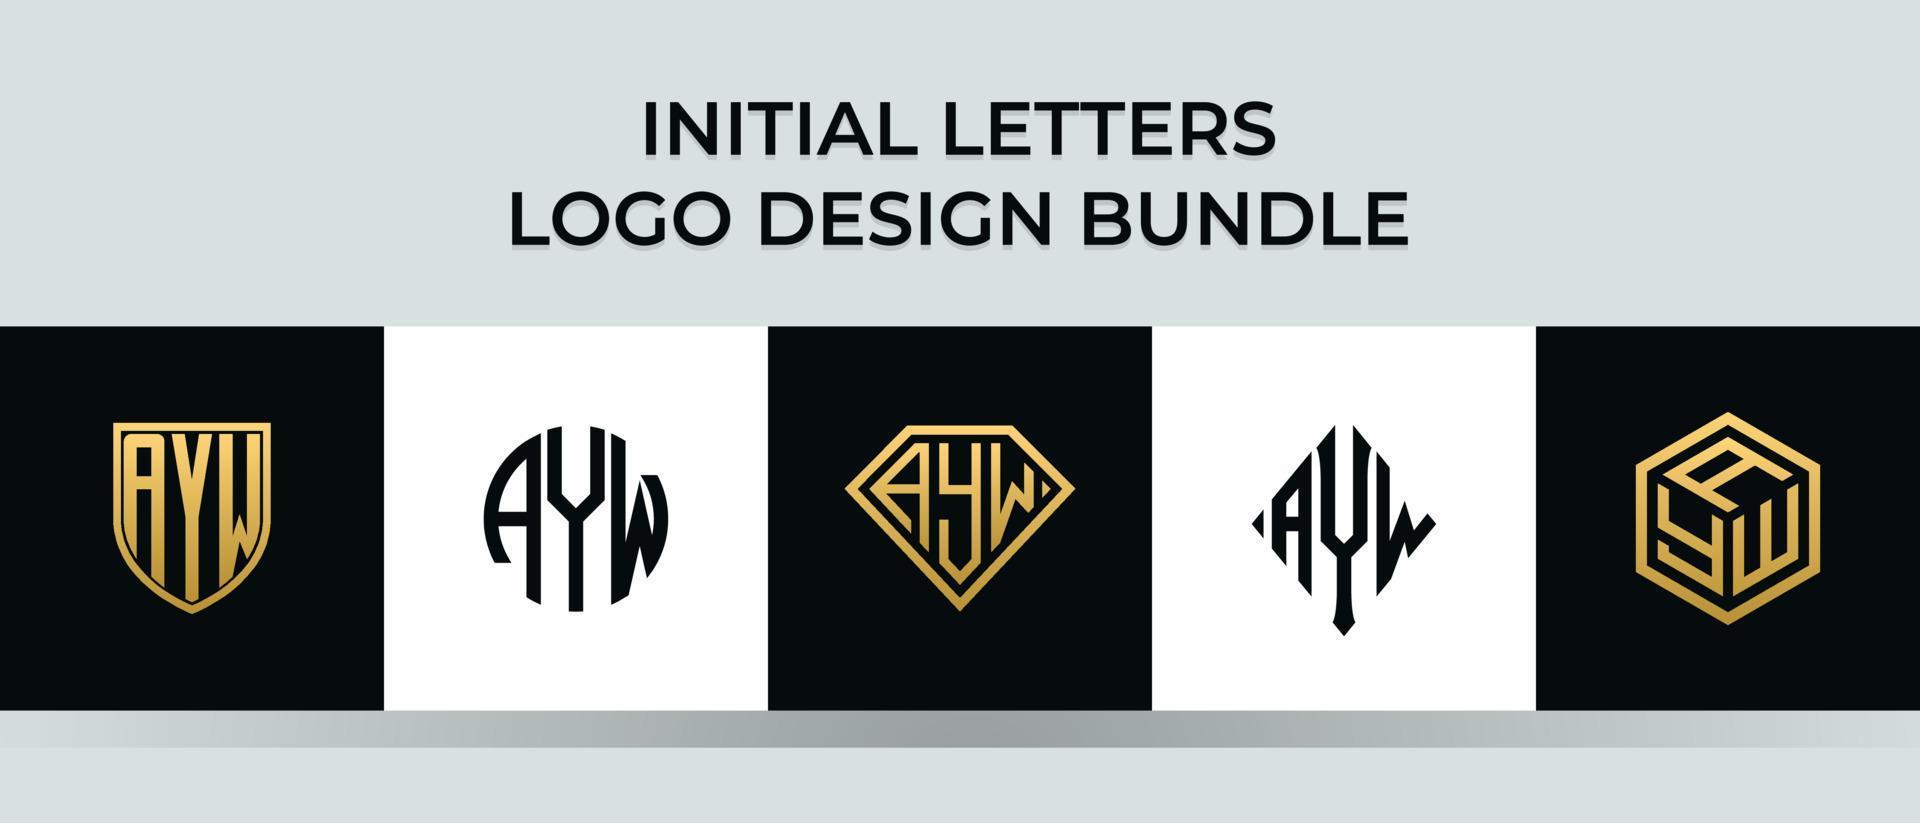 beginletters ayw logo ontwerpen bundel vector